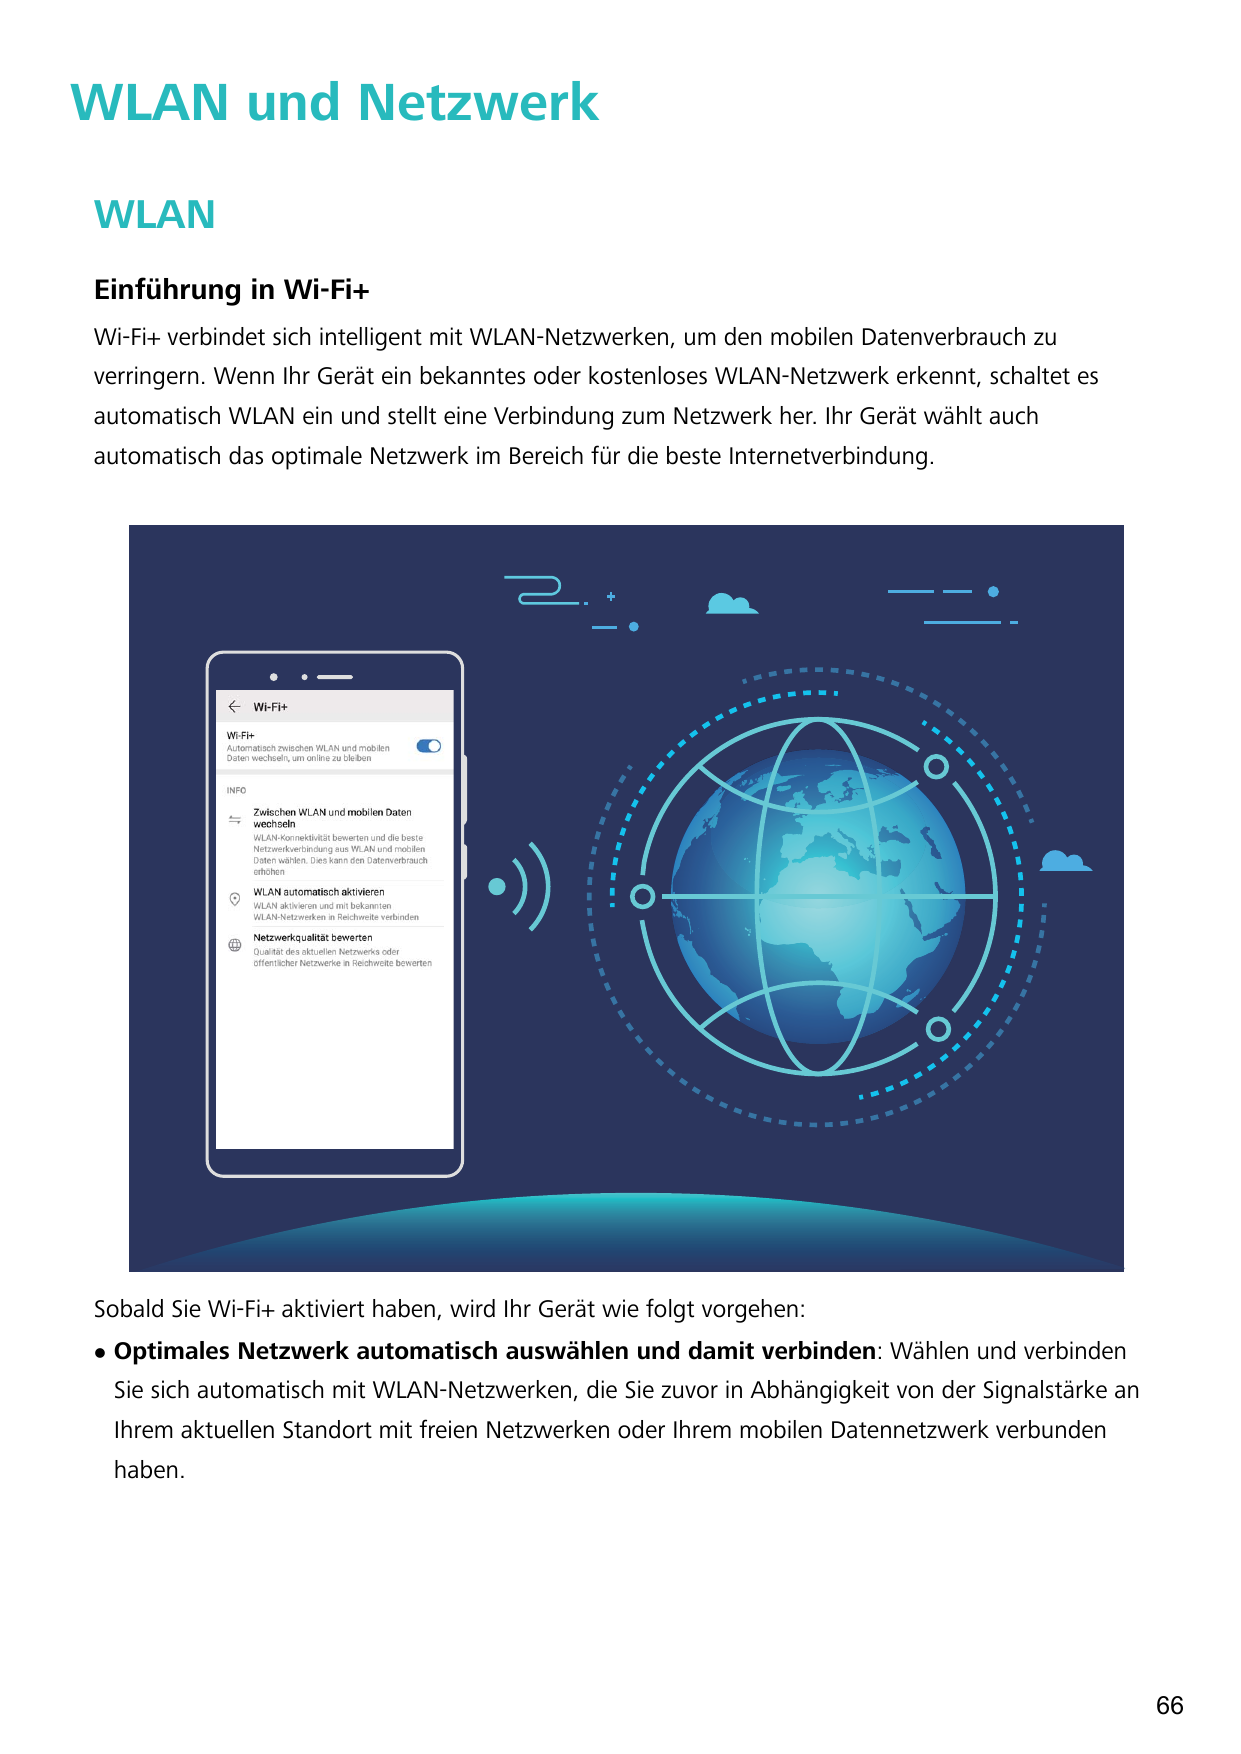 WLAN und NetzwerkWLANEinführung in Wi-Fi+Wi-Fi+ verbindet sich intelligent mit WLAN-Netzwerken, um den mobilen Datenverbrauch zu